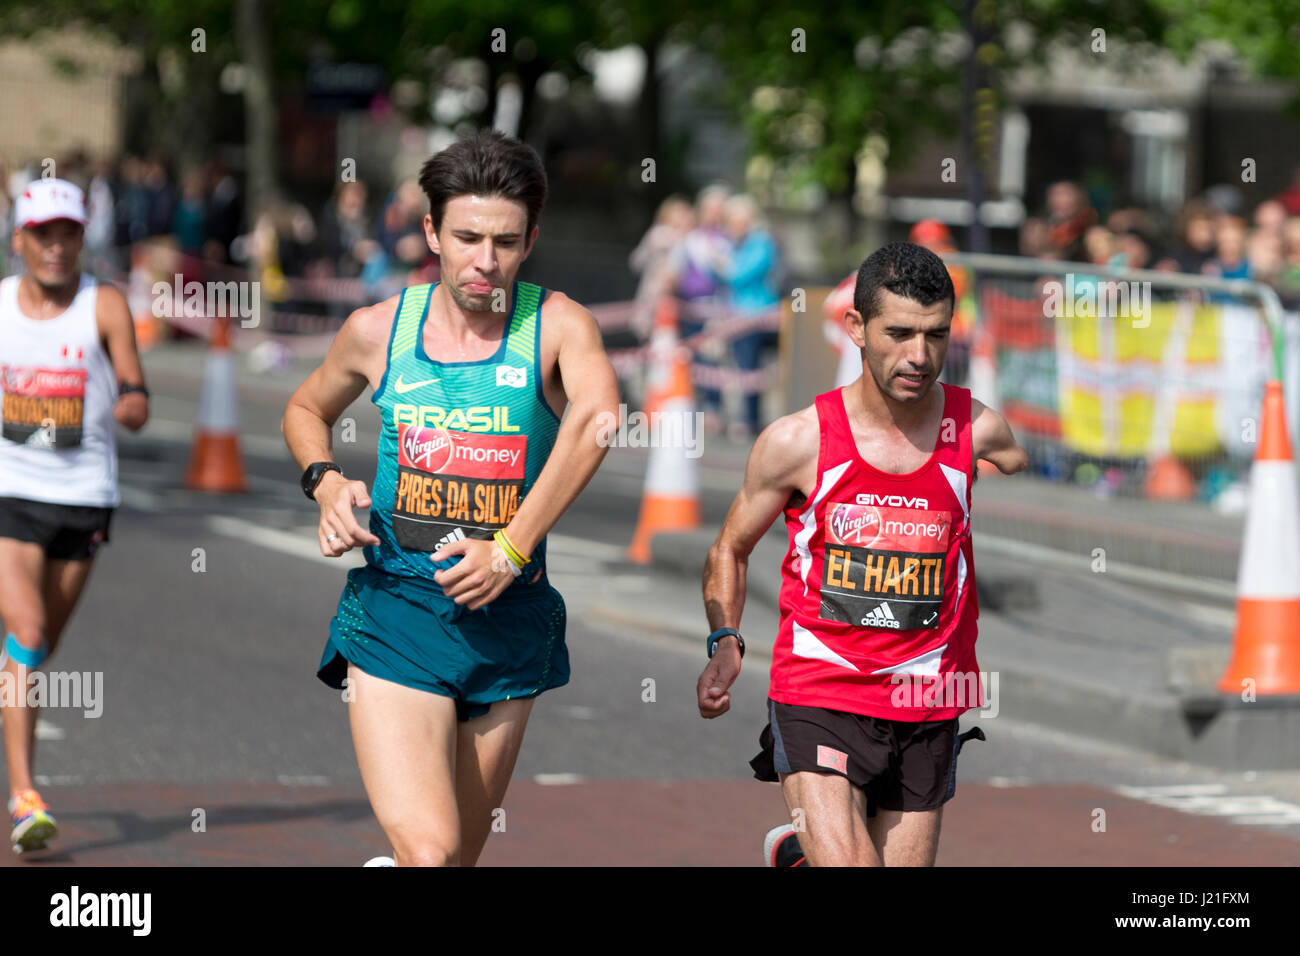 Londres, Royaume-Uni. 23 avril, 2017. Alex Pires da Silva (BRA) vainqueur et Abdelhadi El Harti (MAR) deuxième T45/T46 men's Virgin Money Marathon de Londres 2017, l'Autoroute, London, UK.23 avril 2017. Crédit : Simon Balson/Alamy Live News Banque D'Images